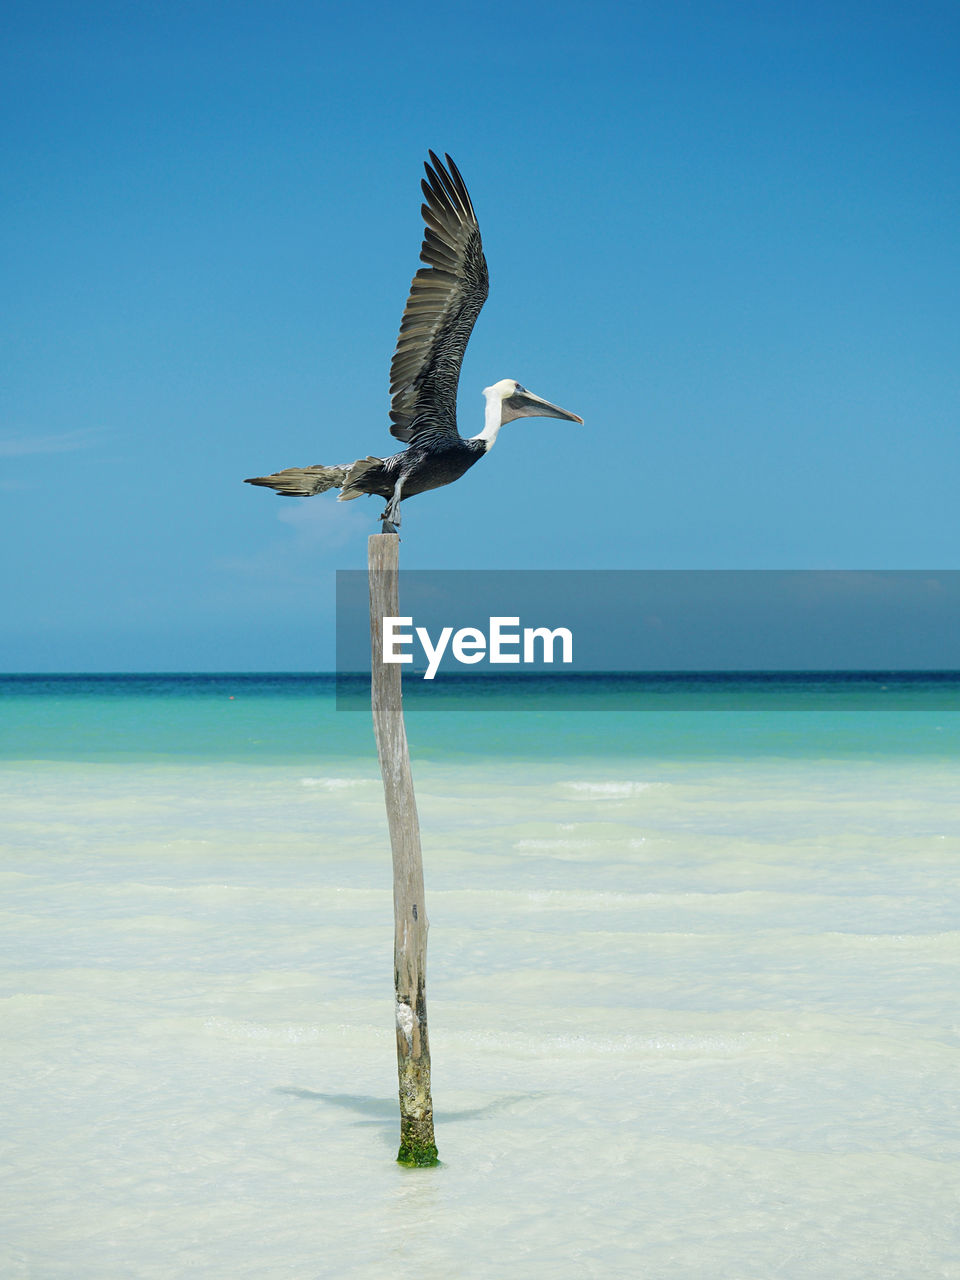 Bird, pelican, flying over sea against sky